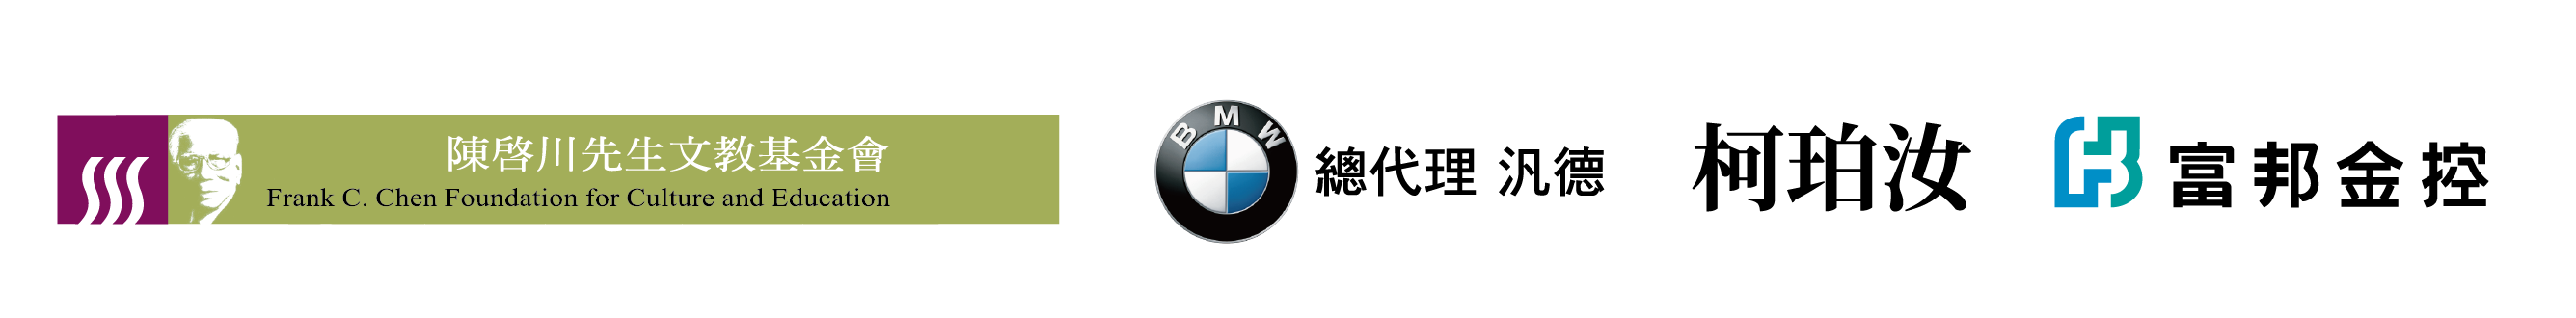 Logo:Frank C. Chen Foundation for Culture and Education、BMW、KE,PO-RU、Fubon Financial